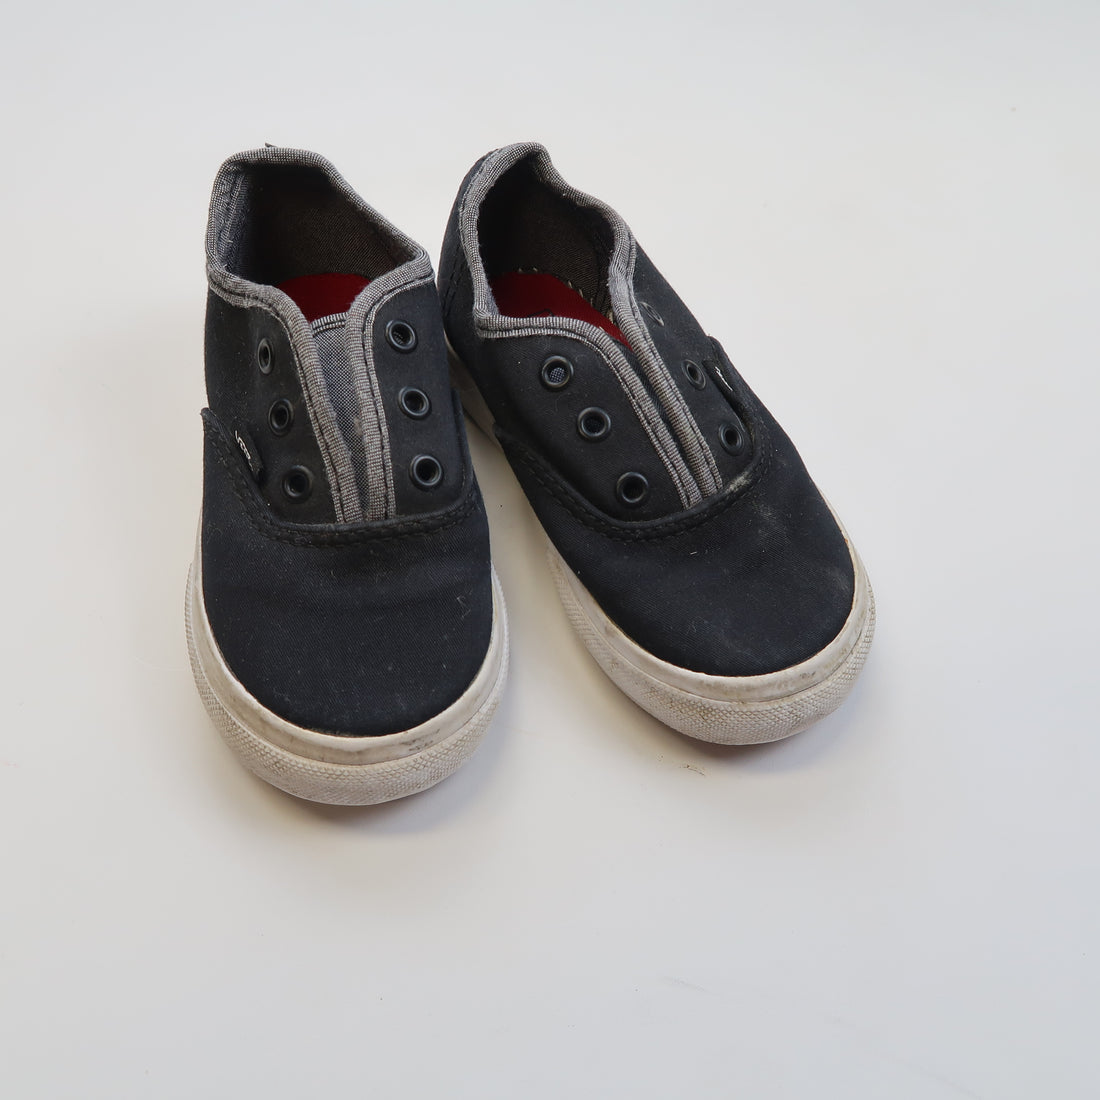 Vans - Shoes (Shoes - 6.5)